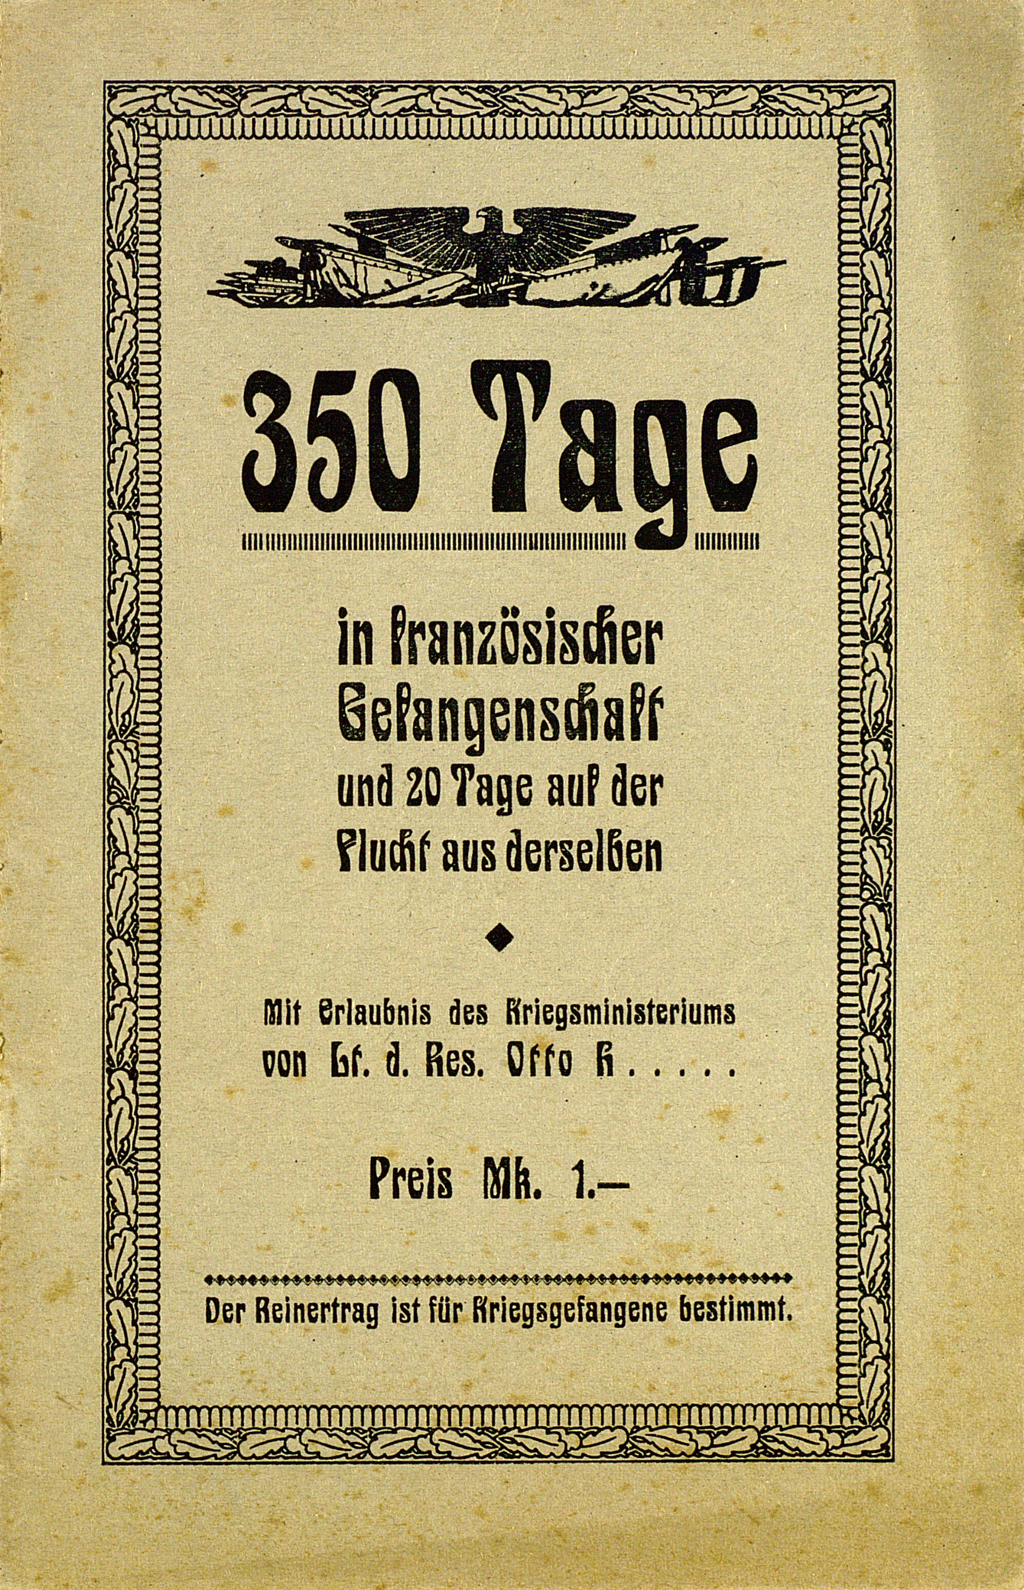 Zu sehen ist der Vordeckel der nachfolgenden Veröffentlichung: Otto H.: Dreihundertfünfzig Tage in französischer Gefangenschaft und zwanzig Tage auf der Flucht aus derselben. Pforzheim: Weber, [1918].